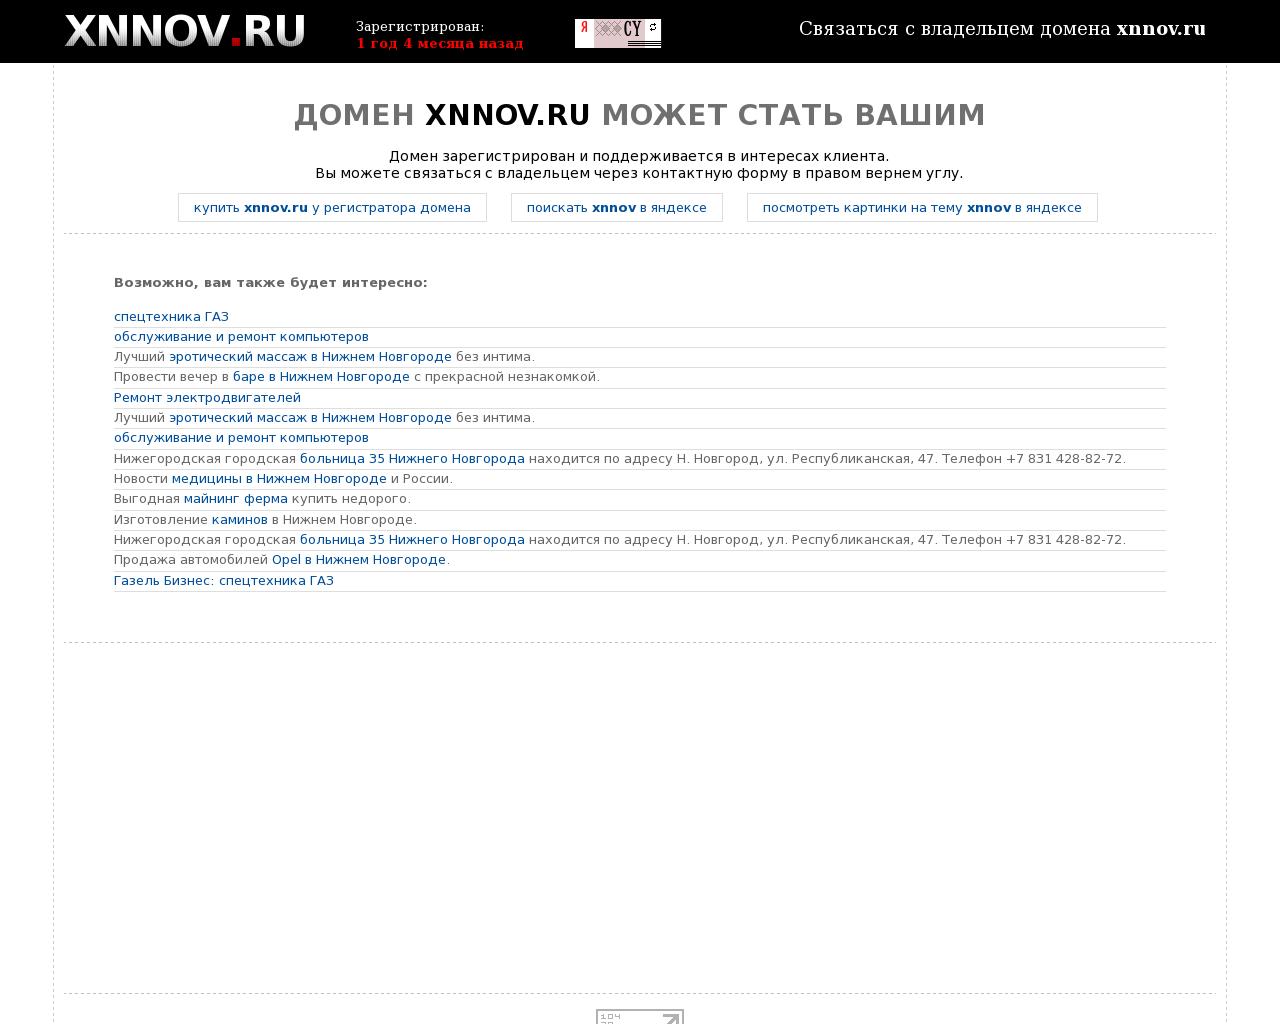 Изображение сайта xnnov.ru в разрешении 1280x1024